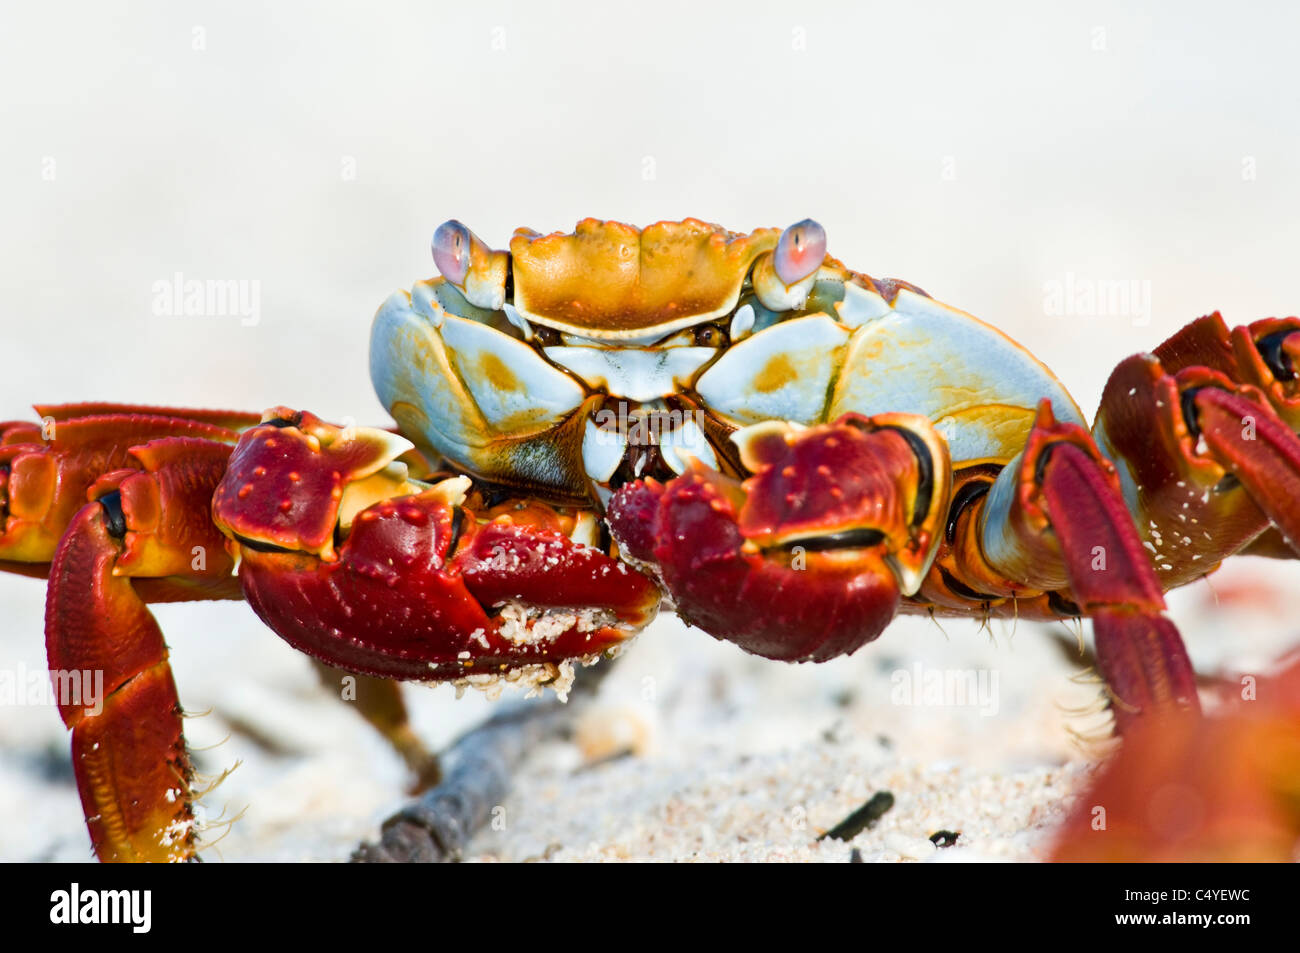 Sally Lightfoot crab eating on beach sur l'Île Baltra aux Îles Galapagos Équateur Banque D'Images